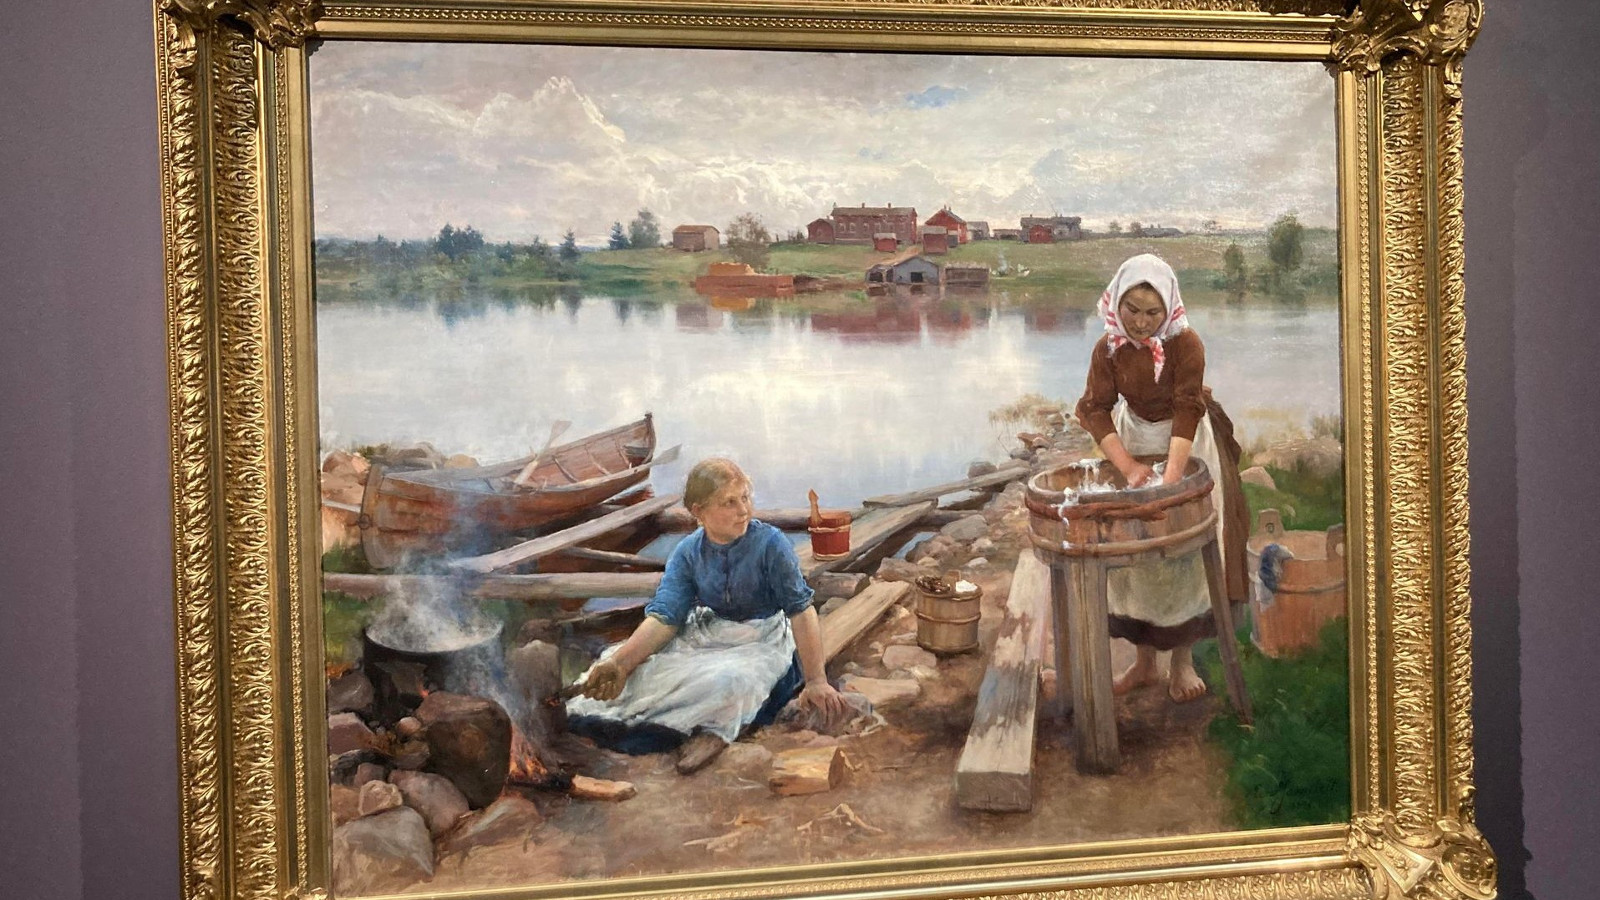 Kuvassa on kullan värisissä kehyksissä teos, jossa on järven rannalla nainen pesemässä pyykkiä korkean paljun ääressä.  Vieress vasemmalla on maassa istumassa tyttö, joka on keittopadan vieressä. Taustalla on tyyntä järveä, jonka takaa näkyy metsää ja taloja.